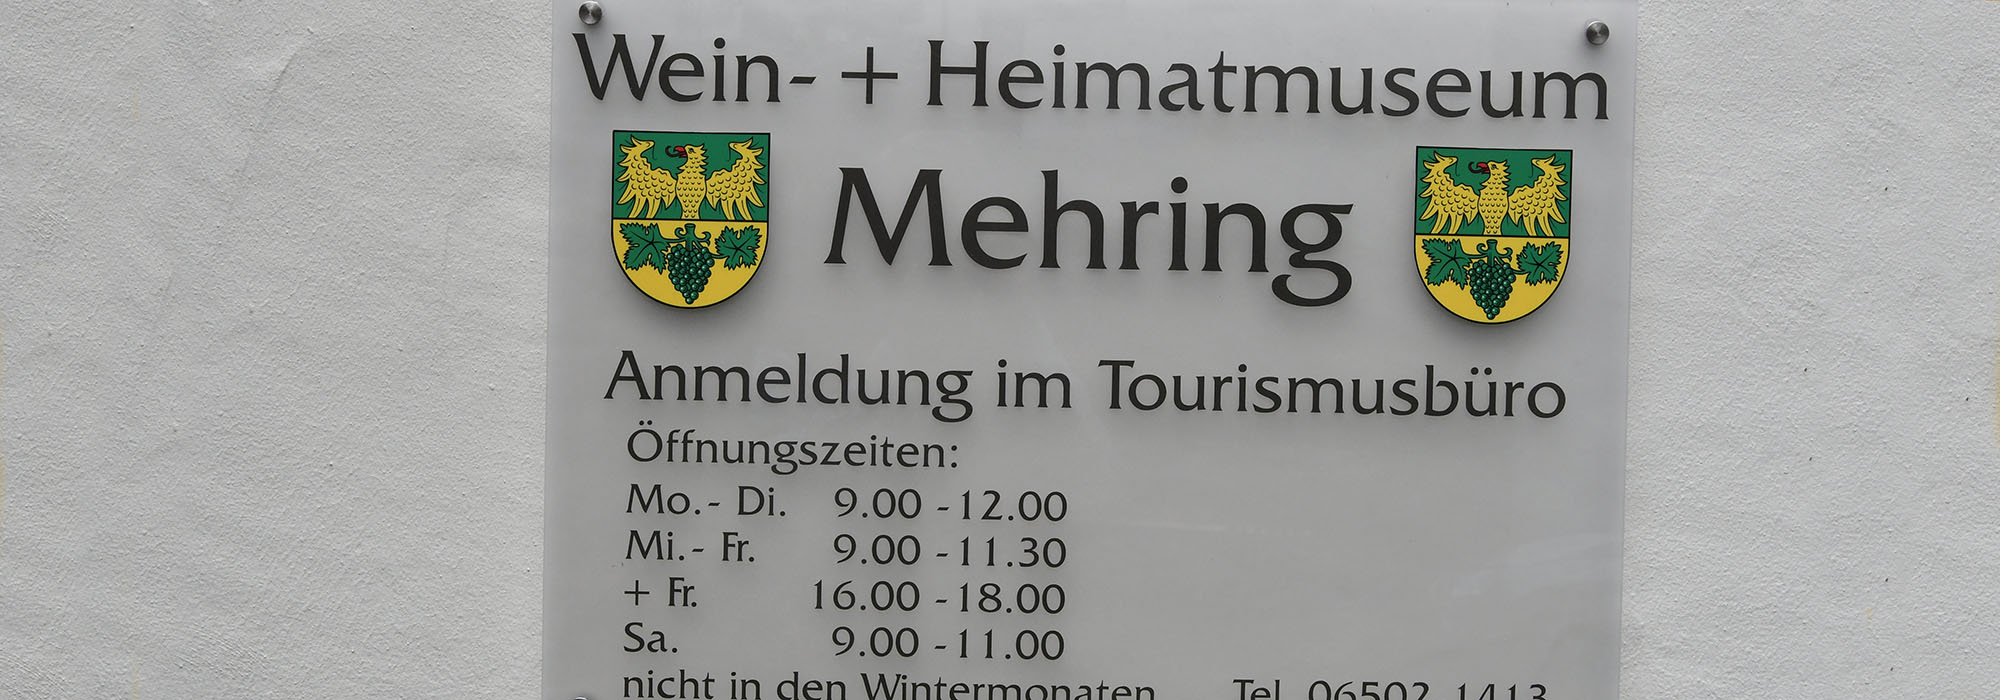 Mehring-Heimatmuseum-3